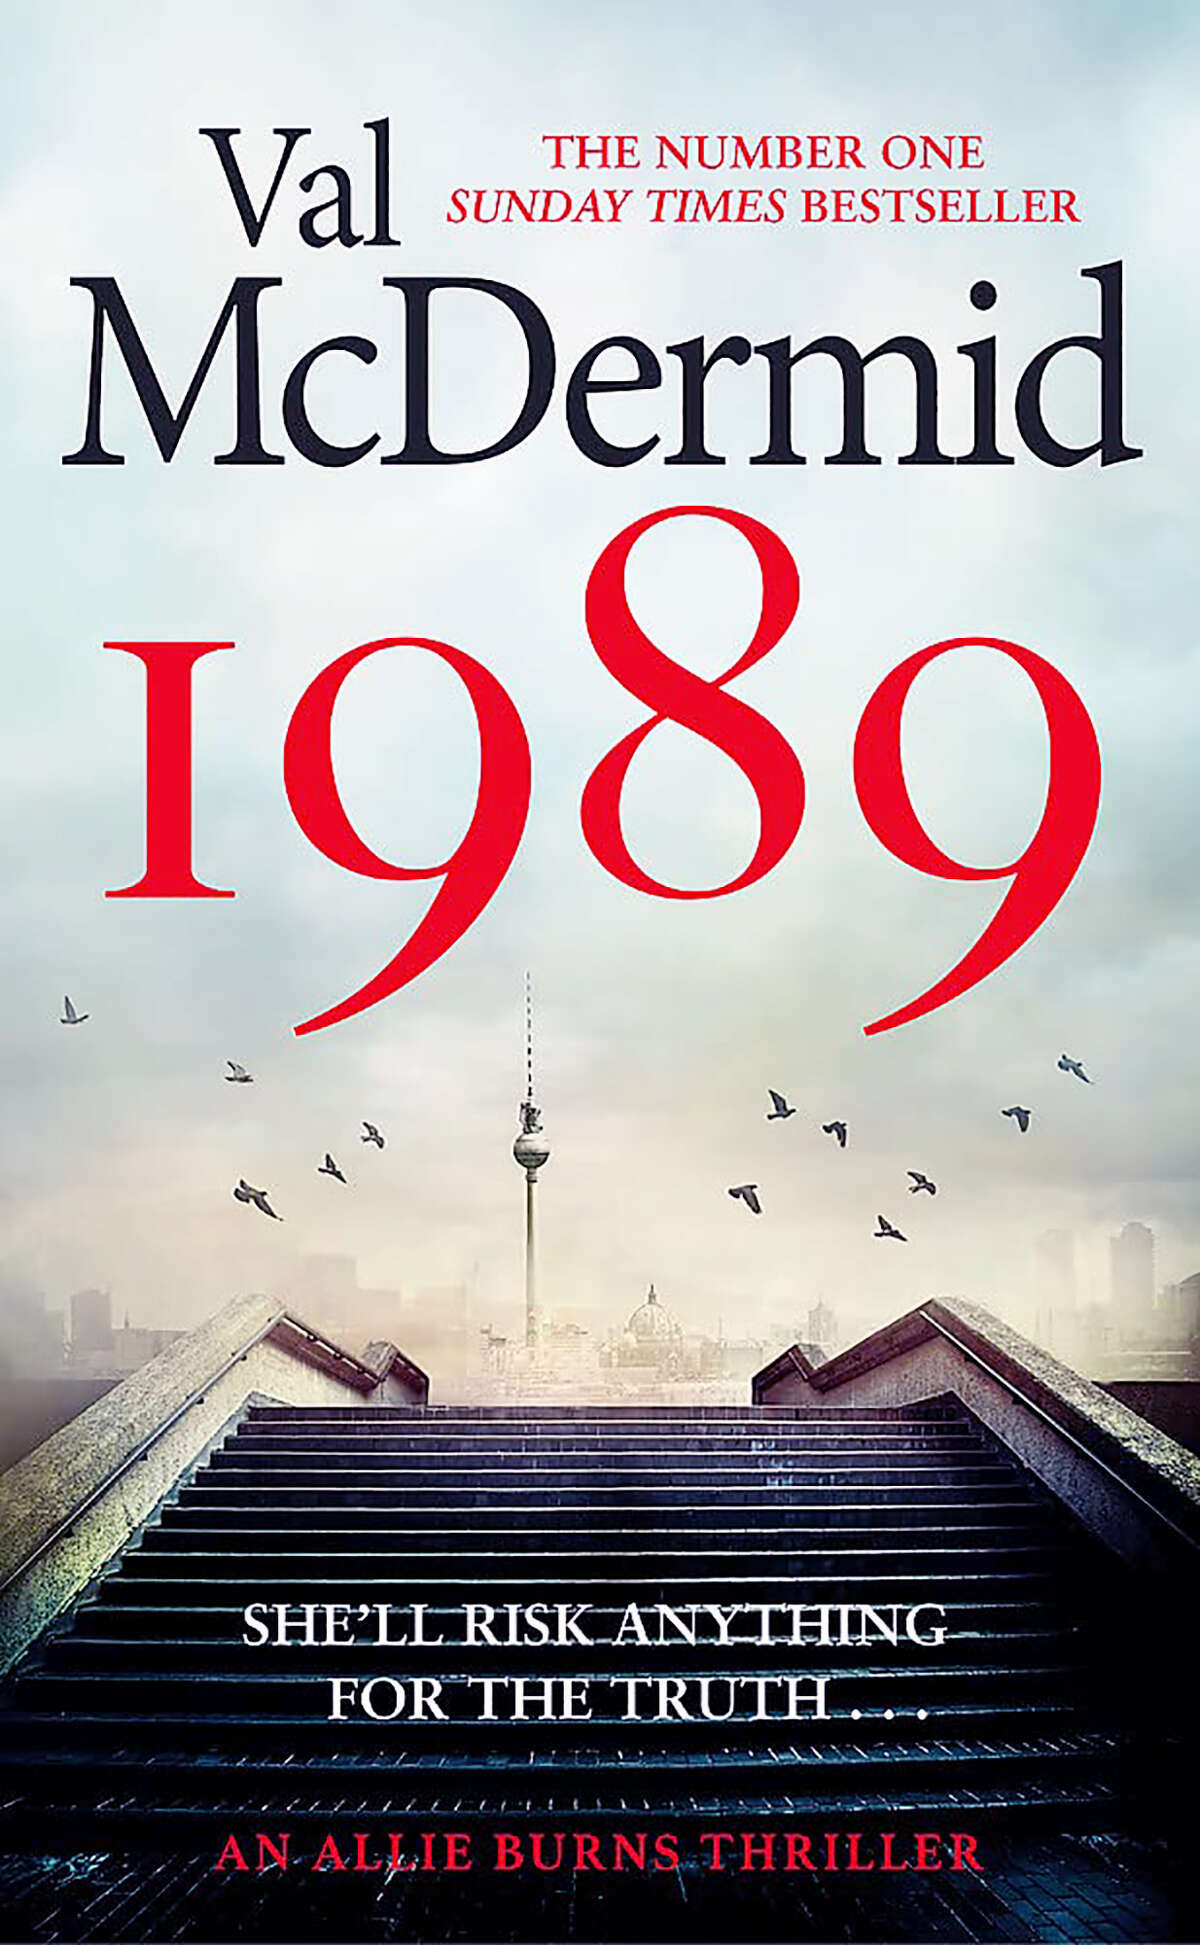 "1989"